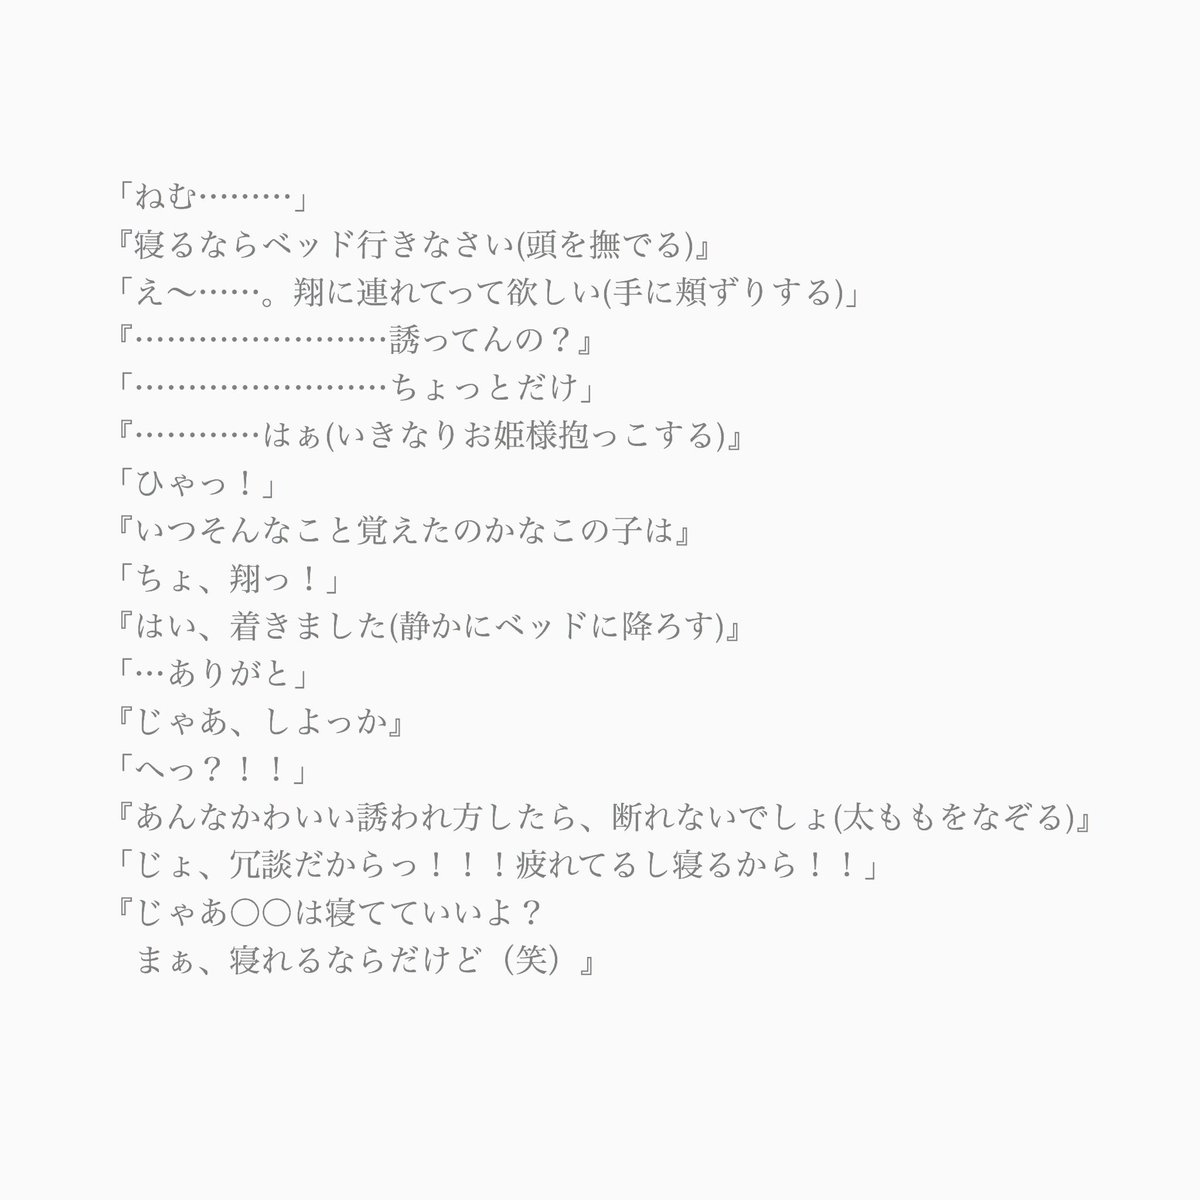 紅玉 嵐妄想垢 Apple Ss Twitter